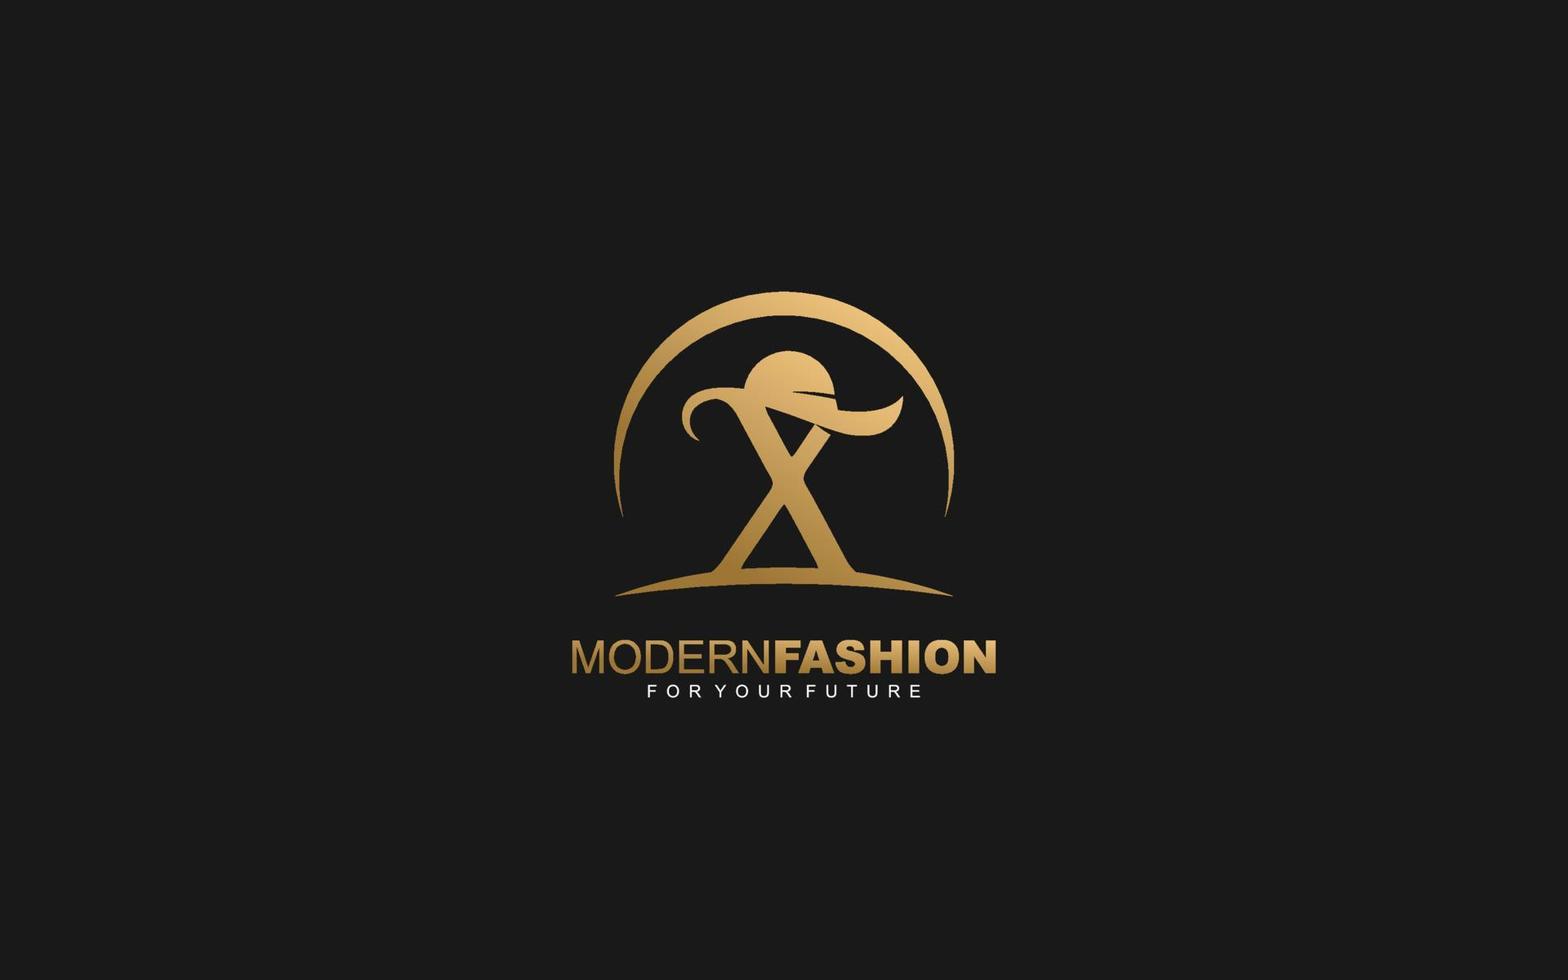 empresa de moda con logotipo x. ilustración de vector de plantilla de identidad de texto para su marca.